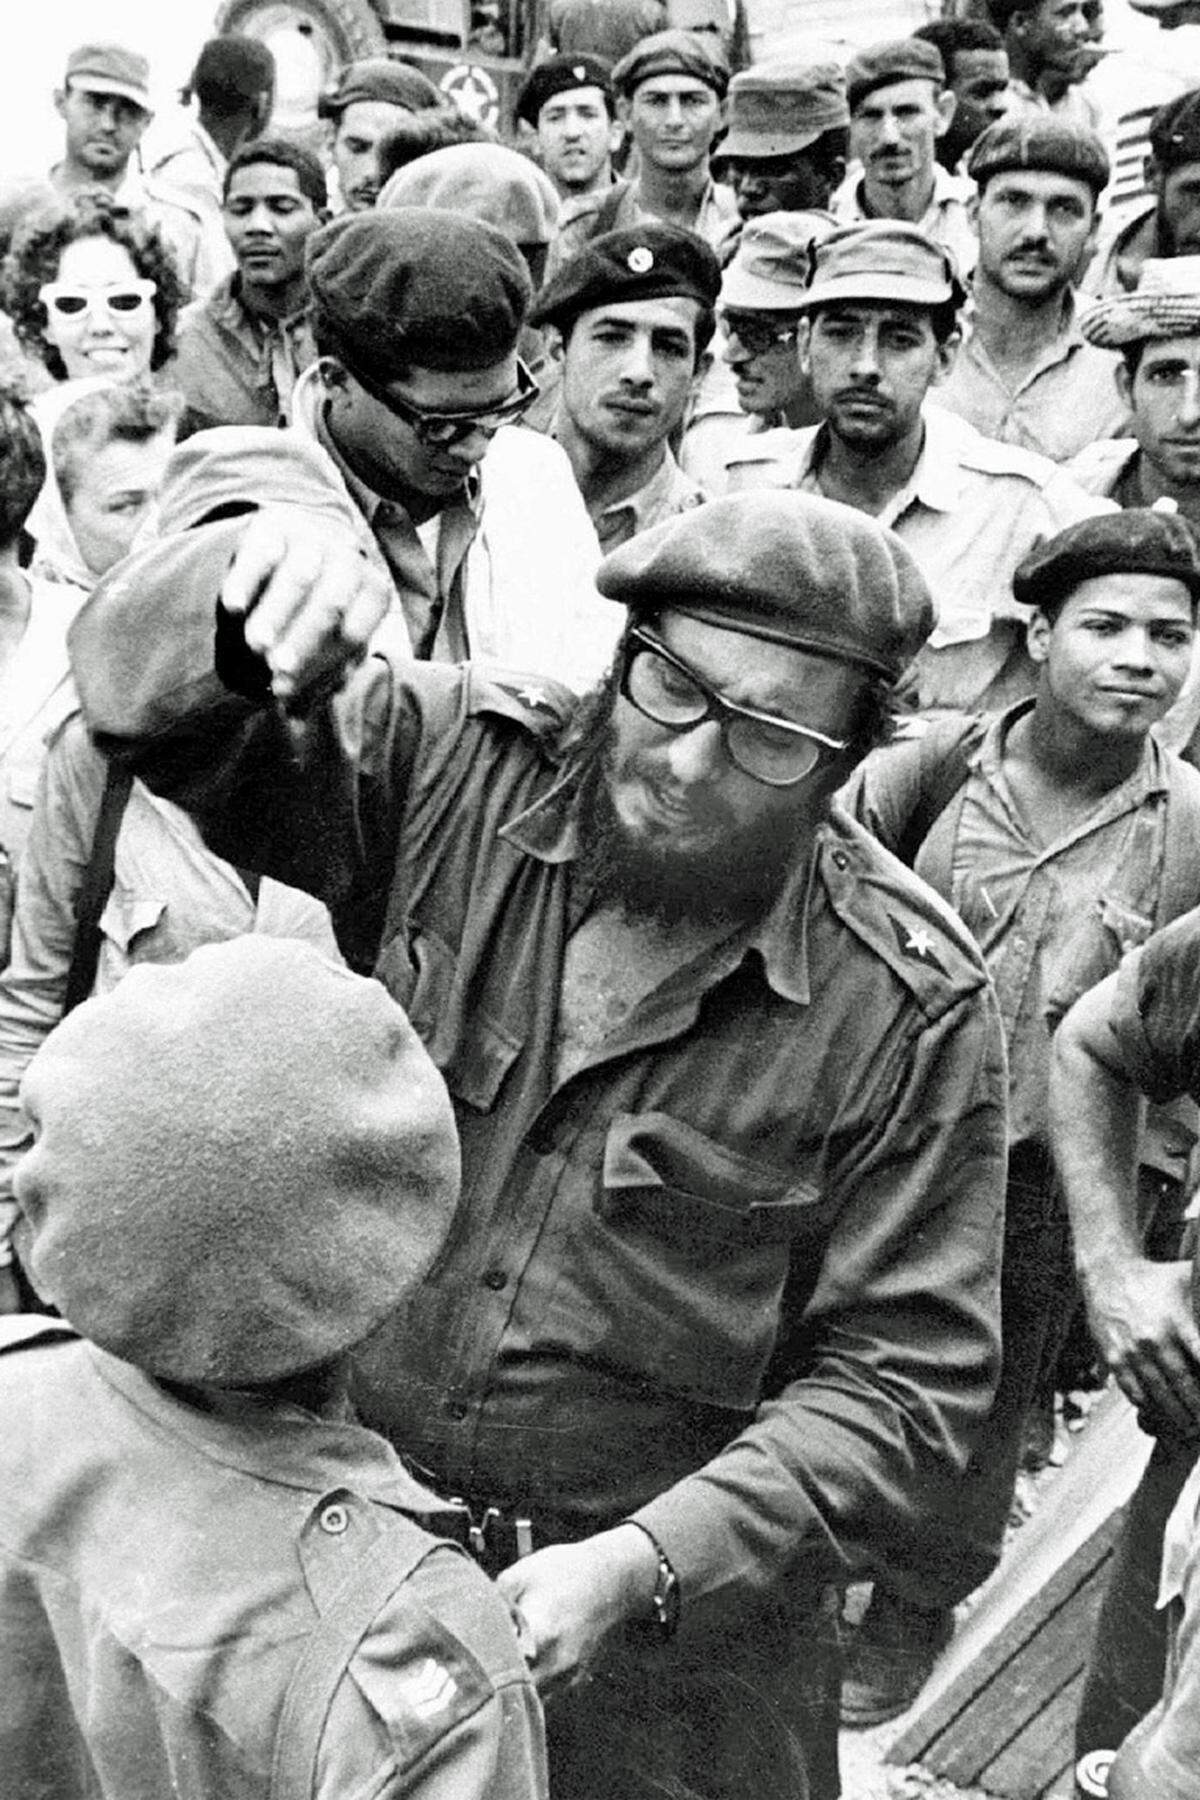 Der Regierungsantritt Fidel Castros 1959 und die folgende Annäherung Kubas an die Sowjetunion waren den USA ein Dorn im Auge. Im Januar 1961 begann die CIA daher rund 1300 gegenrevolutionäre Exilkubaner auszubilden, die am 17. April 1961 in der Schweinebucht an der Südküste Kubas landeten. Die Invasion scheiterte aber am Widerstand der Kubaner – ein politisches Debakel und dennoch ein erster Höhepunkt der gegen die Castro-Regierung gerichteten Aktionen der Vereinigten Staaten.